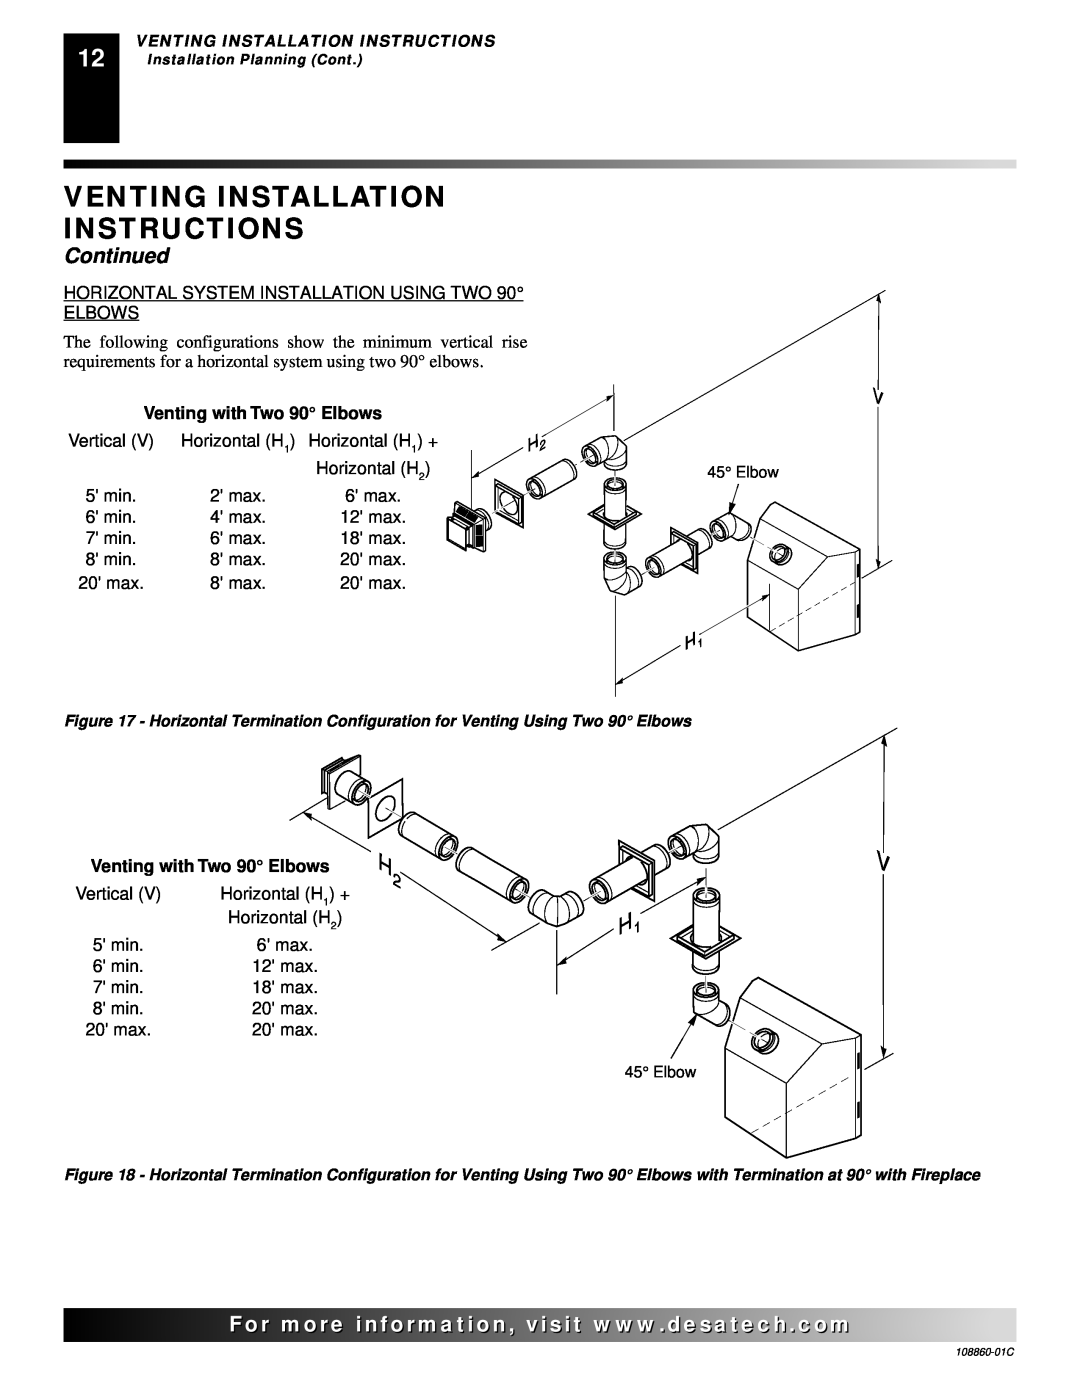 Desa (V)T36EP, (V)T36EN installation manual Venting Installation Instructions, Continued, Venting with Two 90 Elbows 